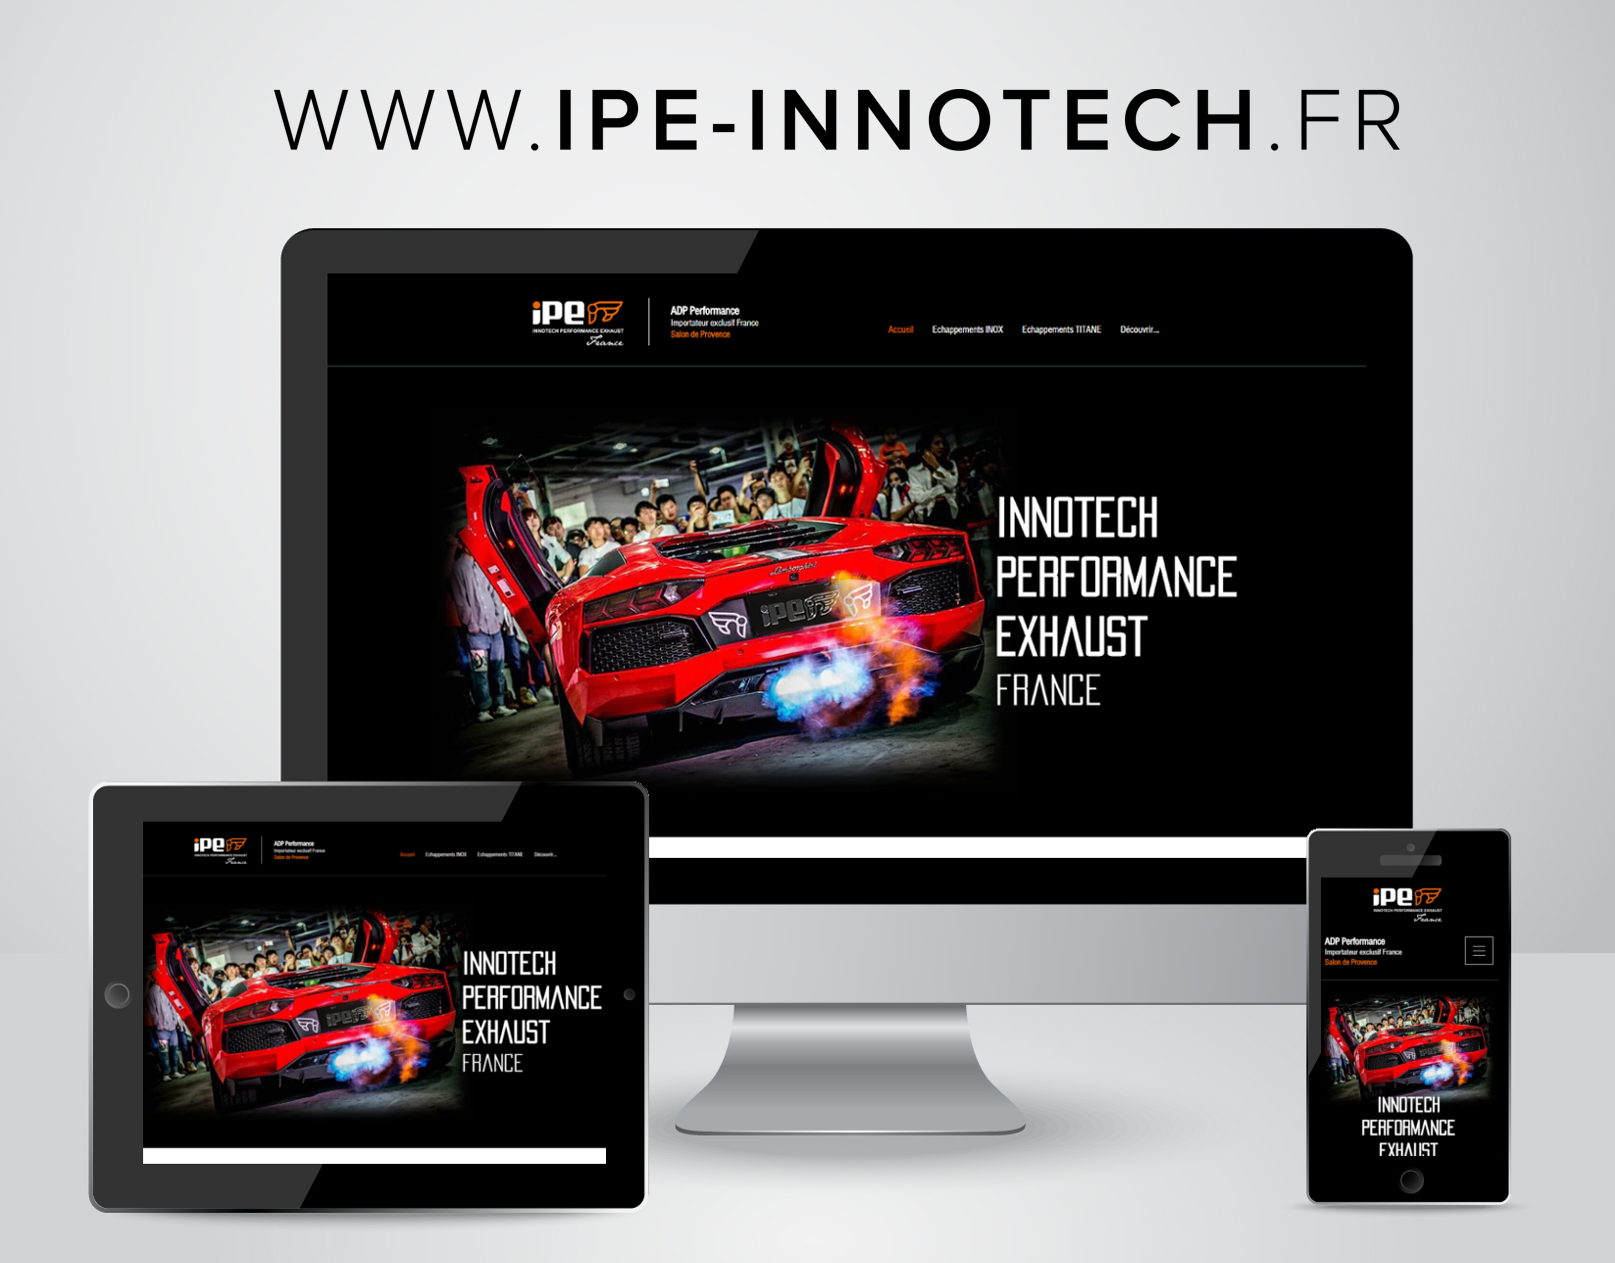 www.ipe-innotech.fr